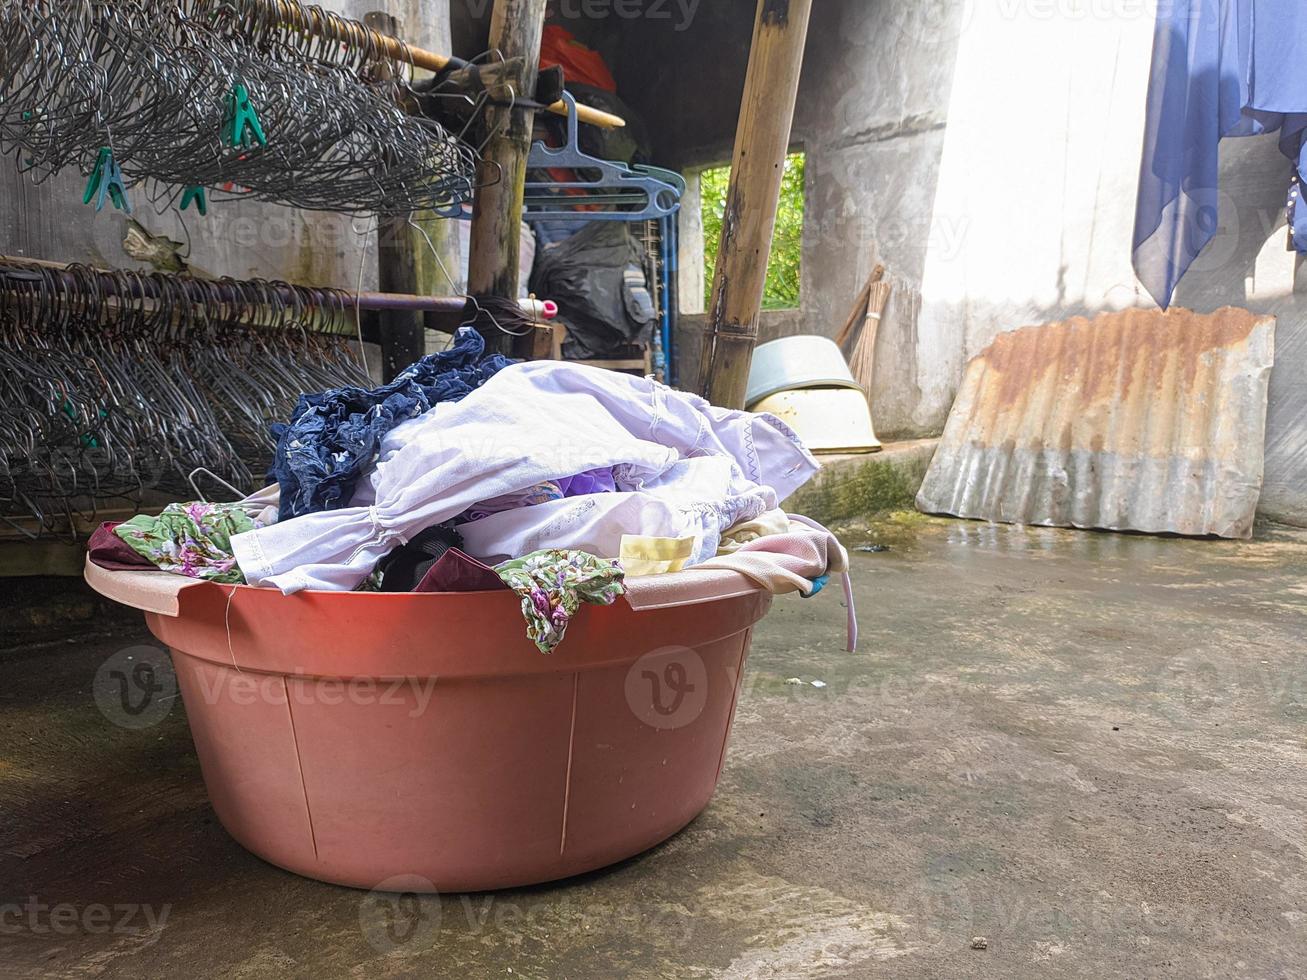 ungewaschene Schmutzwäsche stapelt sich. ein Haufen schmutziger Kleidung, die seit vielen Tagen nicht gewaschen wurde. das wirkliche Leben am Ende des Jahres foto